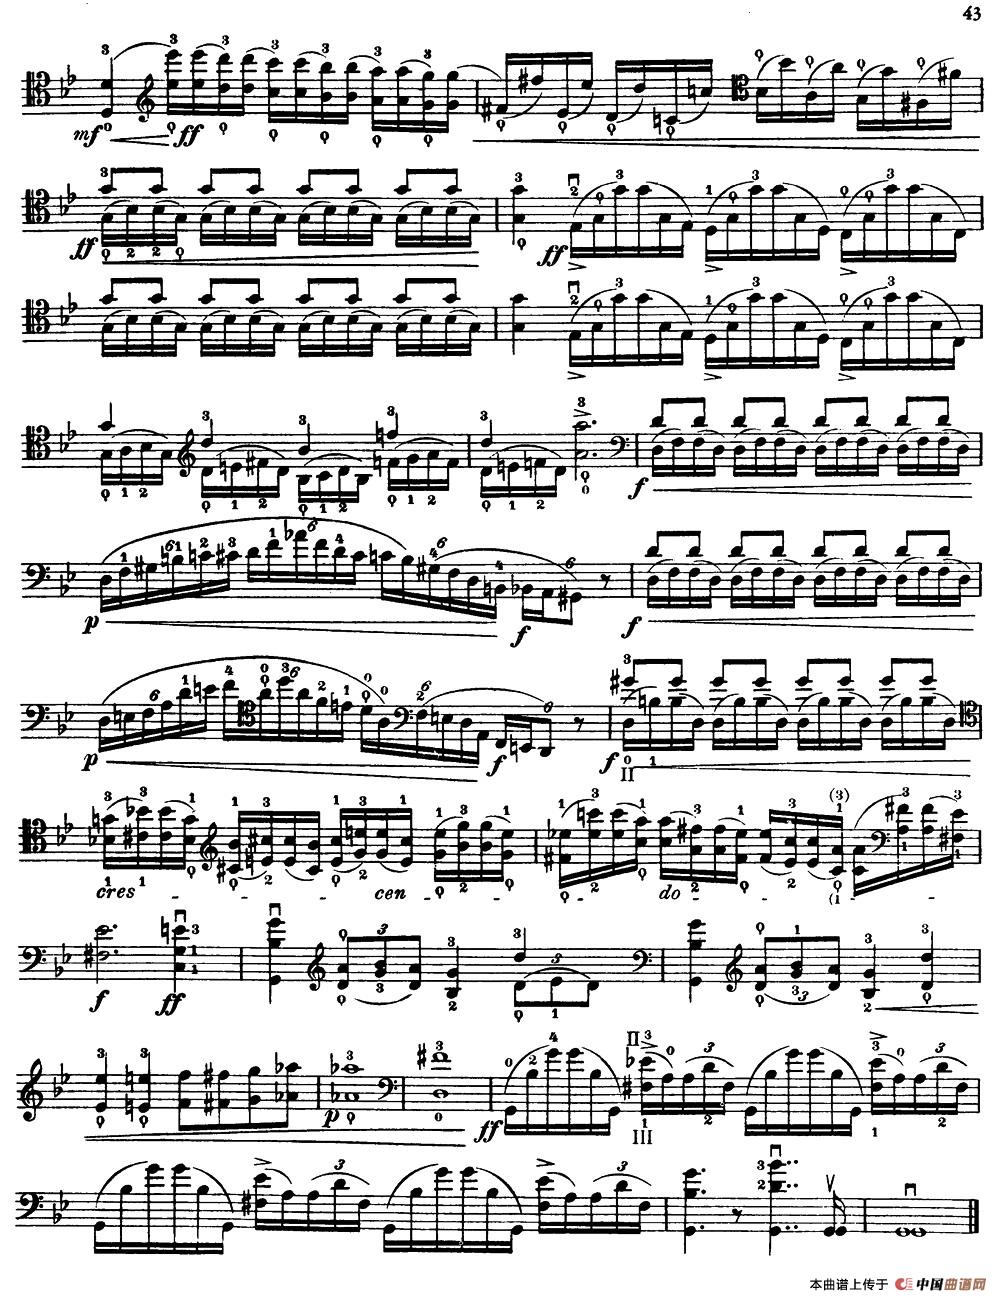 大提琴高级练习曲40首 No.20小提琴谱